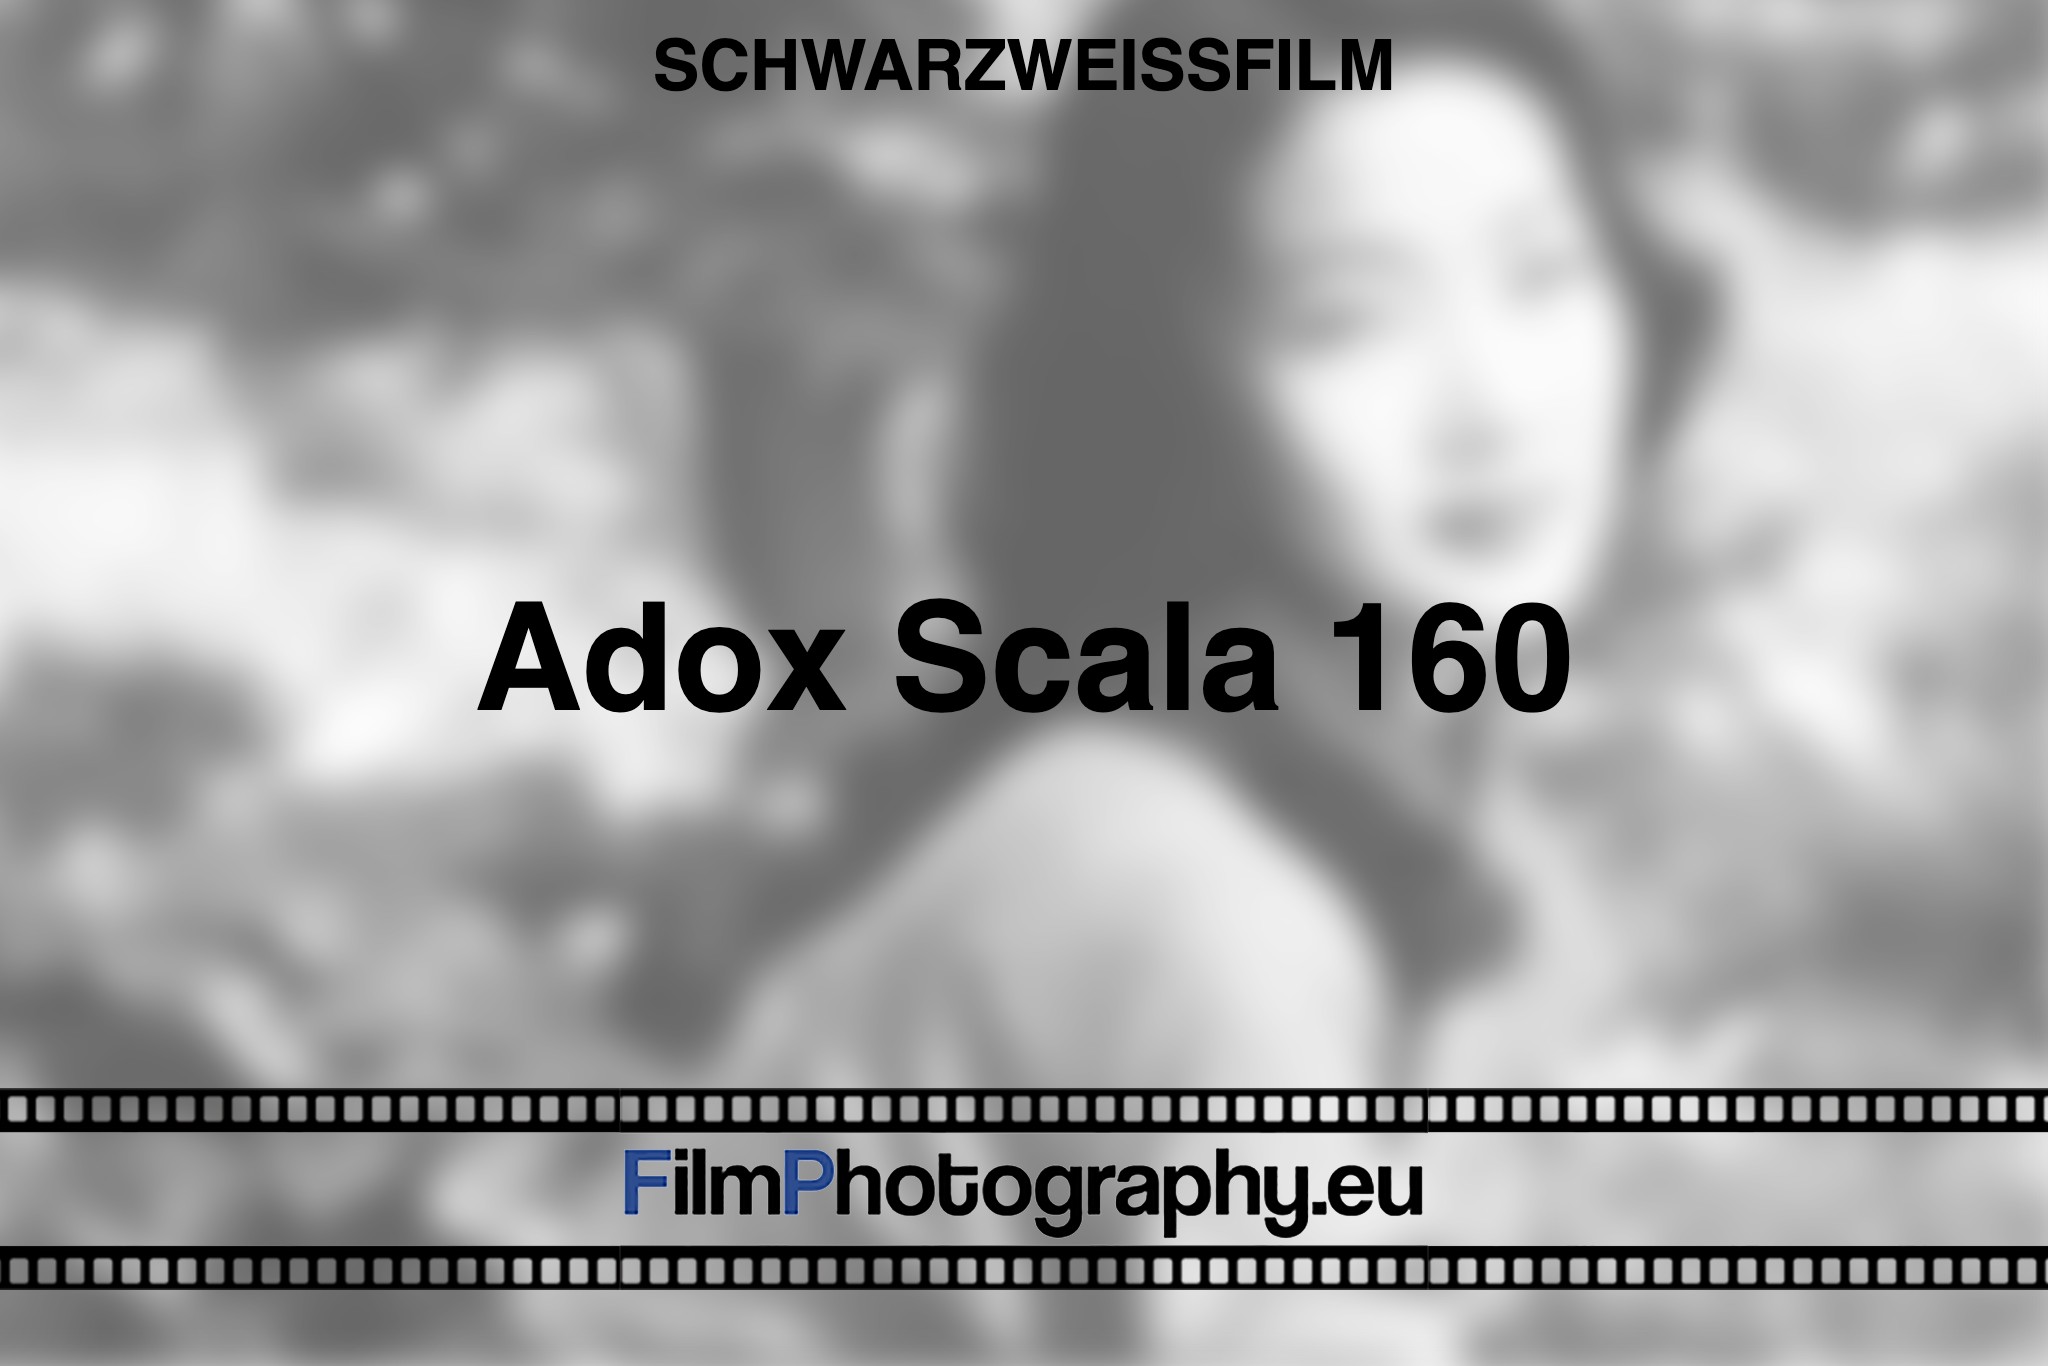 adox-scala-160-schwarzweißfilm-bnv